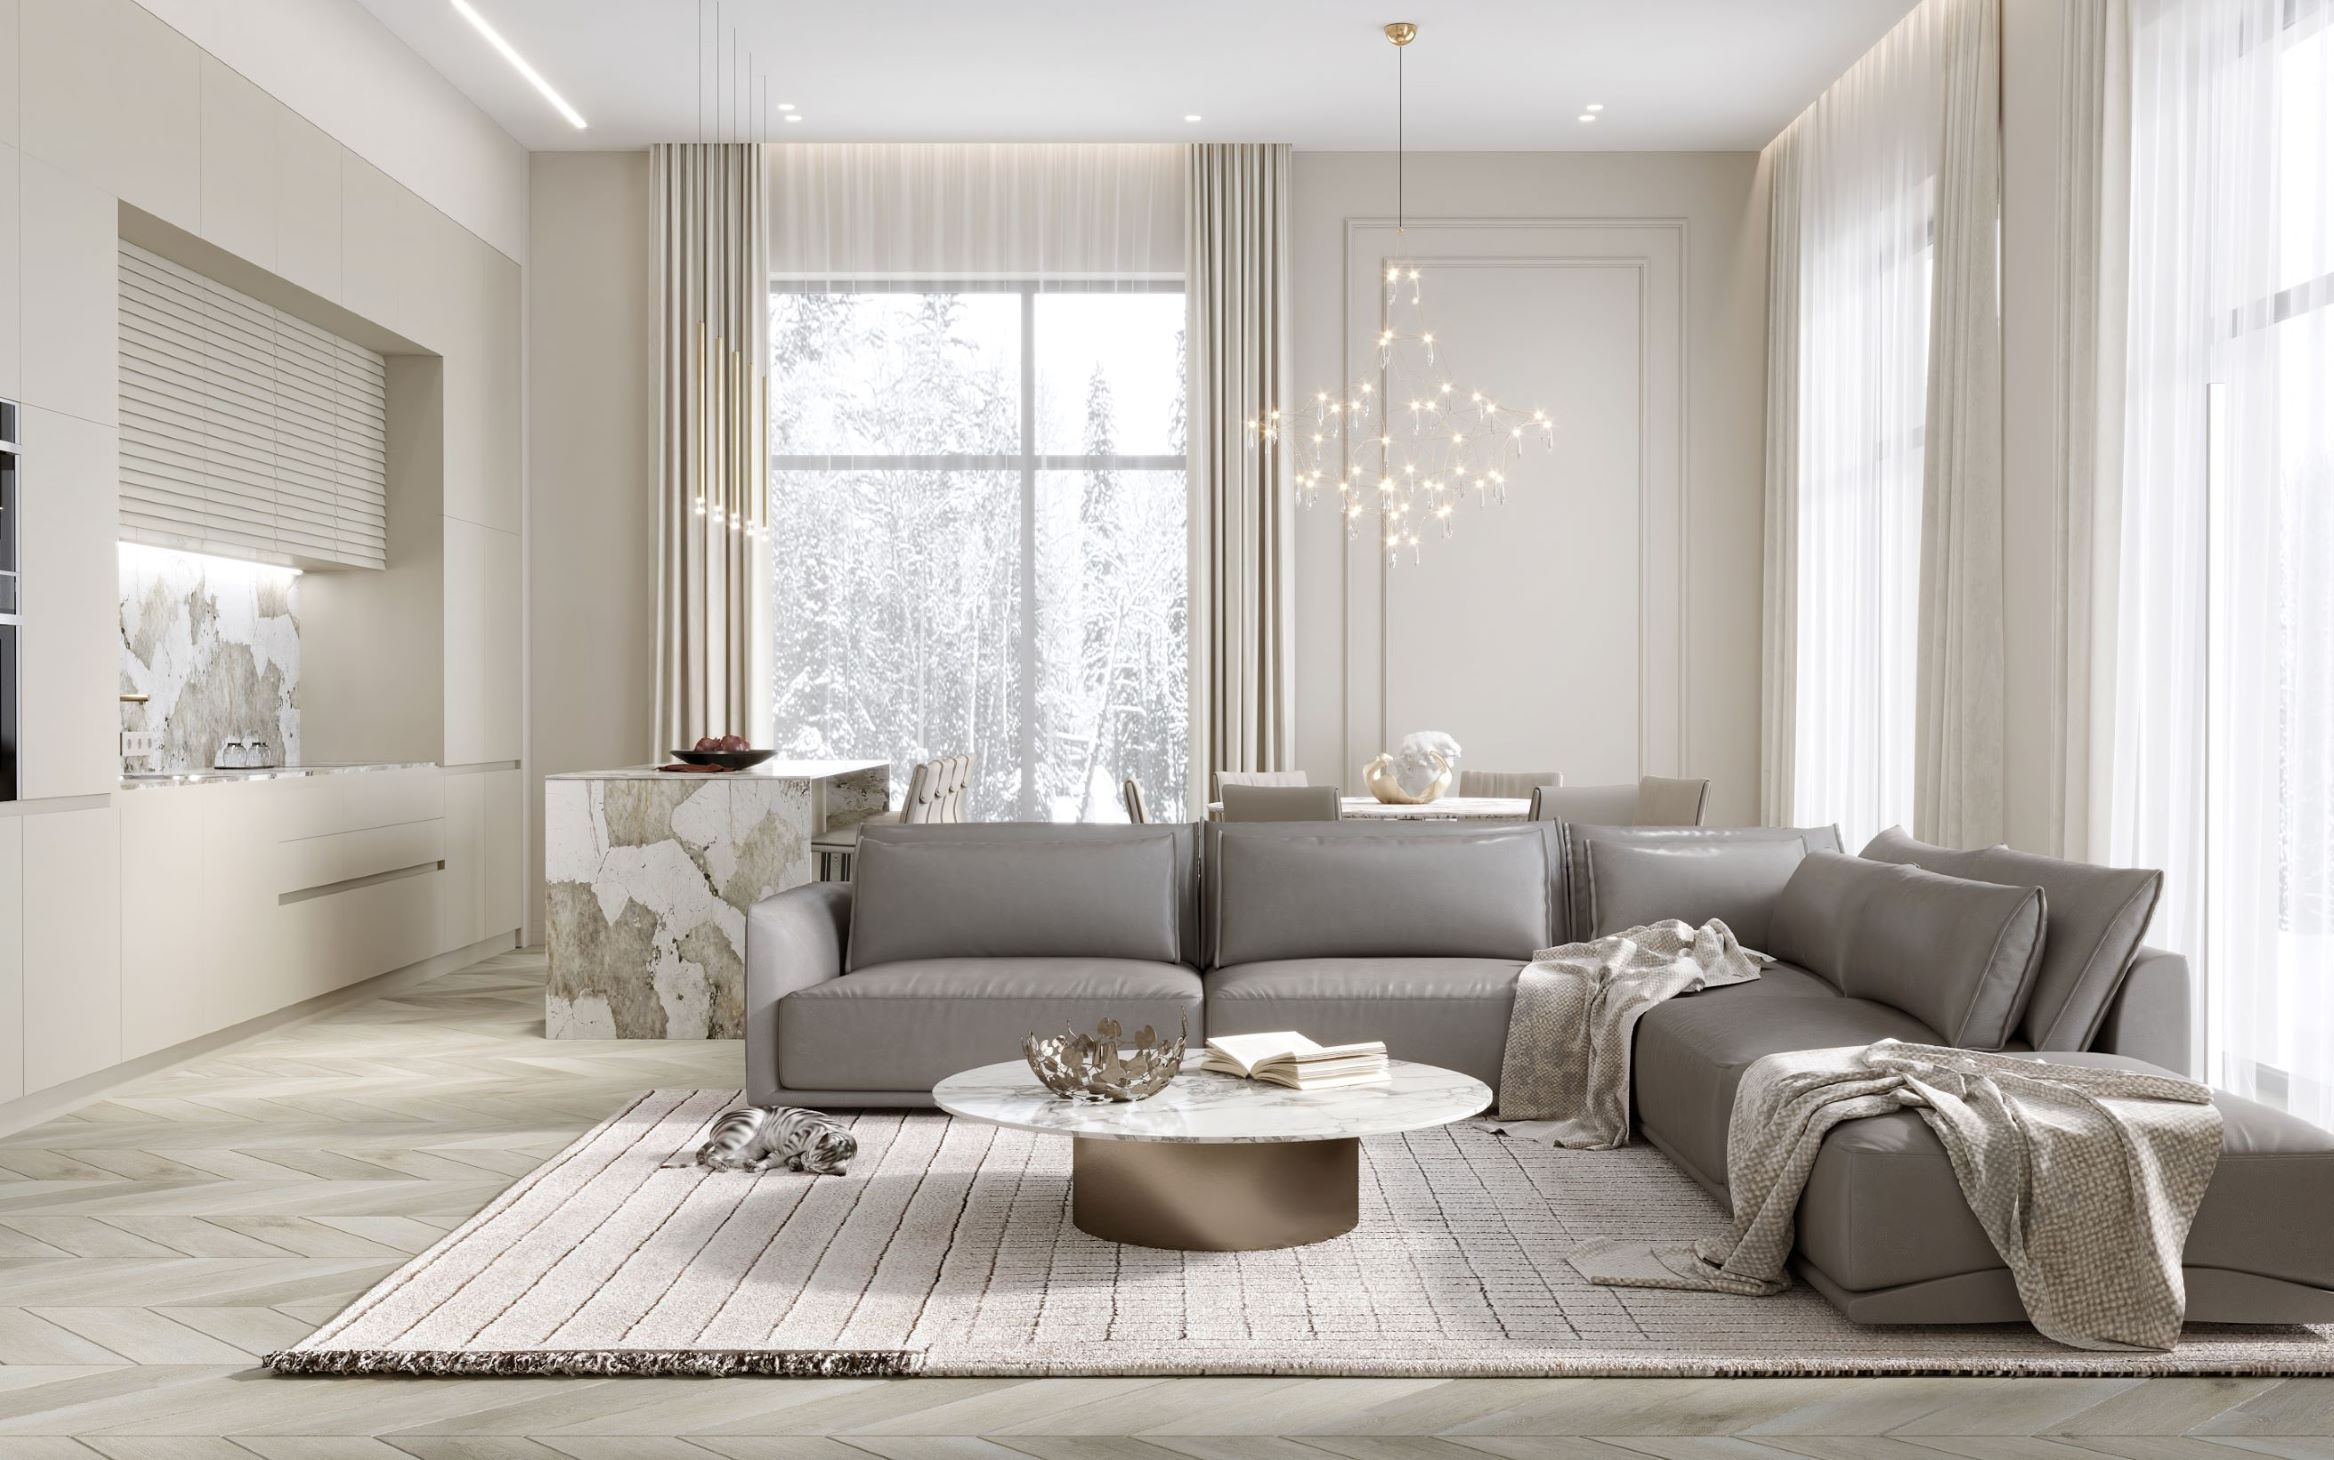 Dzīvojamā māja Baložos - gaiša un plaša dzīvojamā istaba ar pelēku luksus dīvānu pa vidu, interjers bēšās krāsās